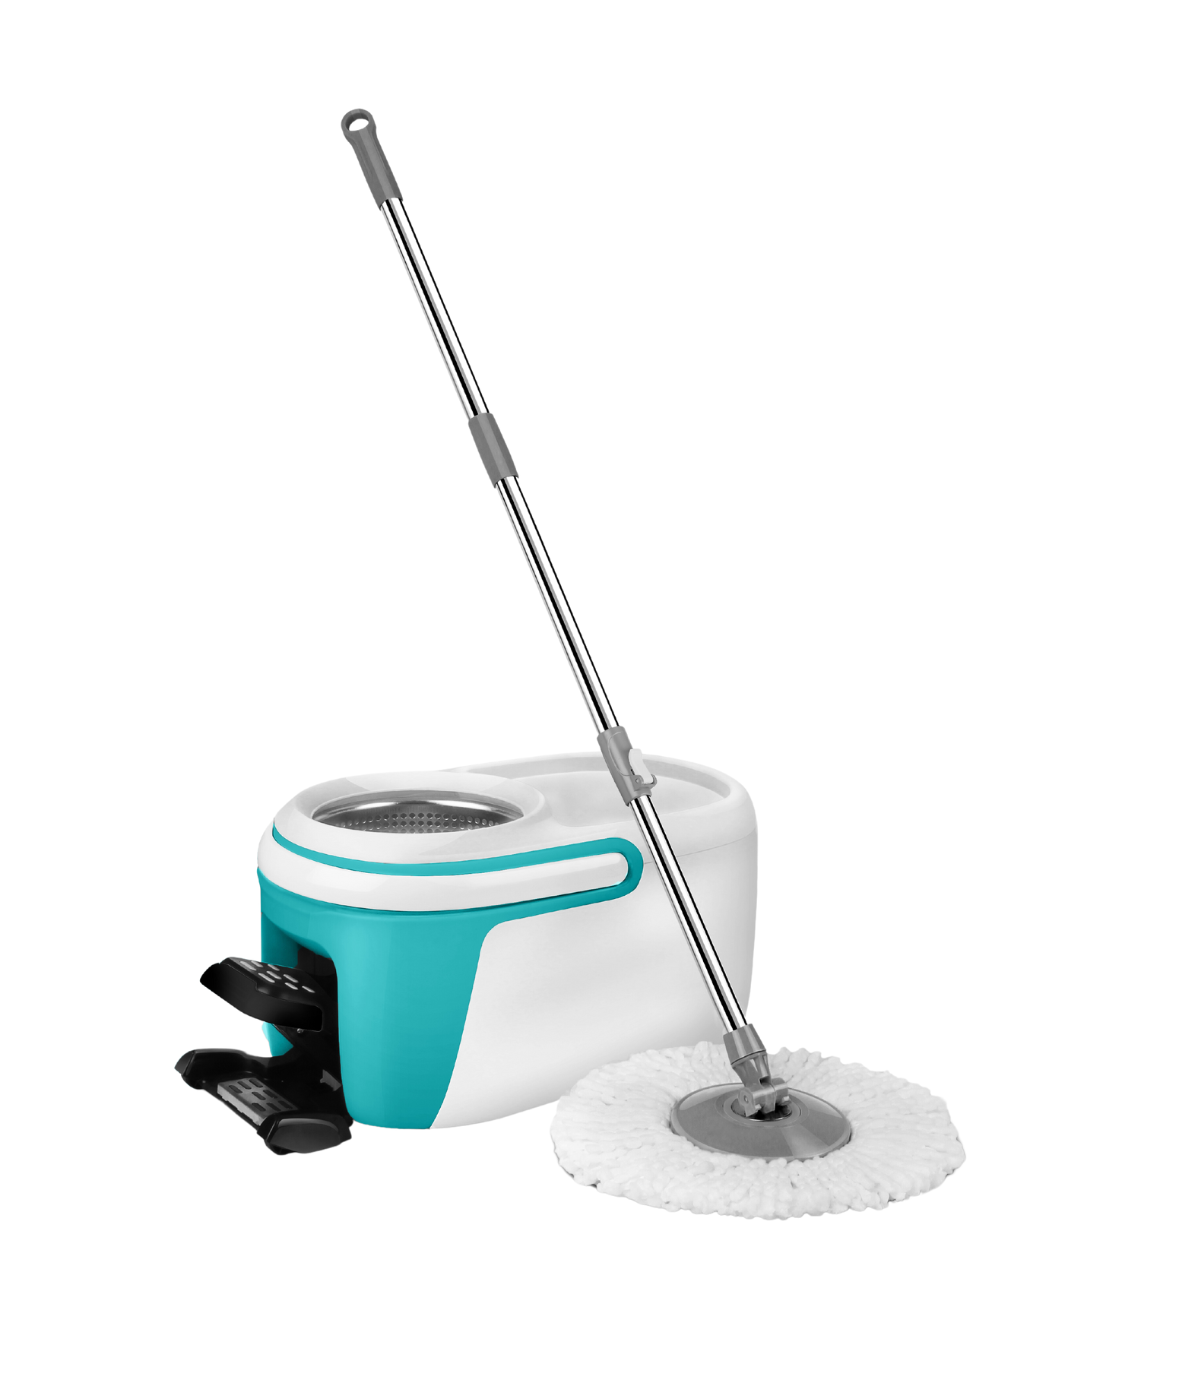 Achaté mop with swivel head + pedal bin